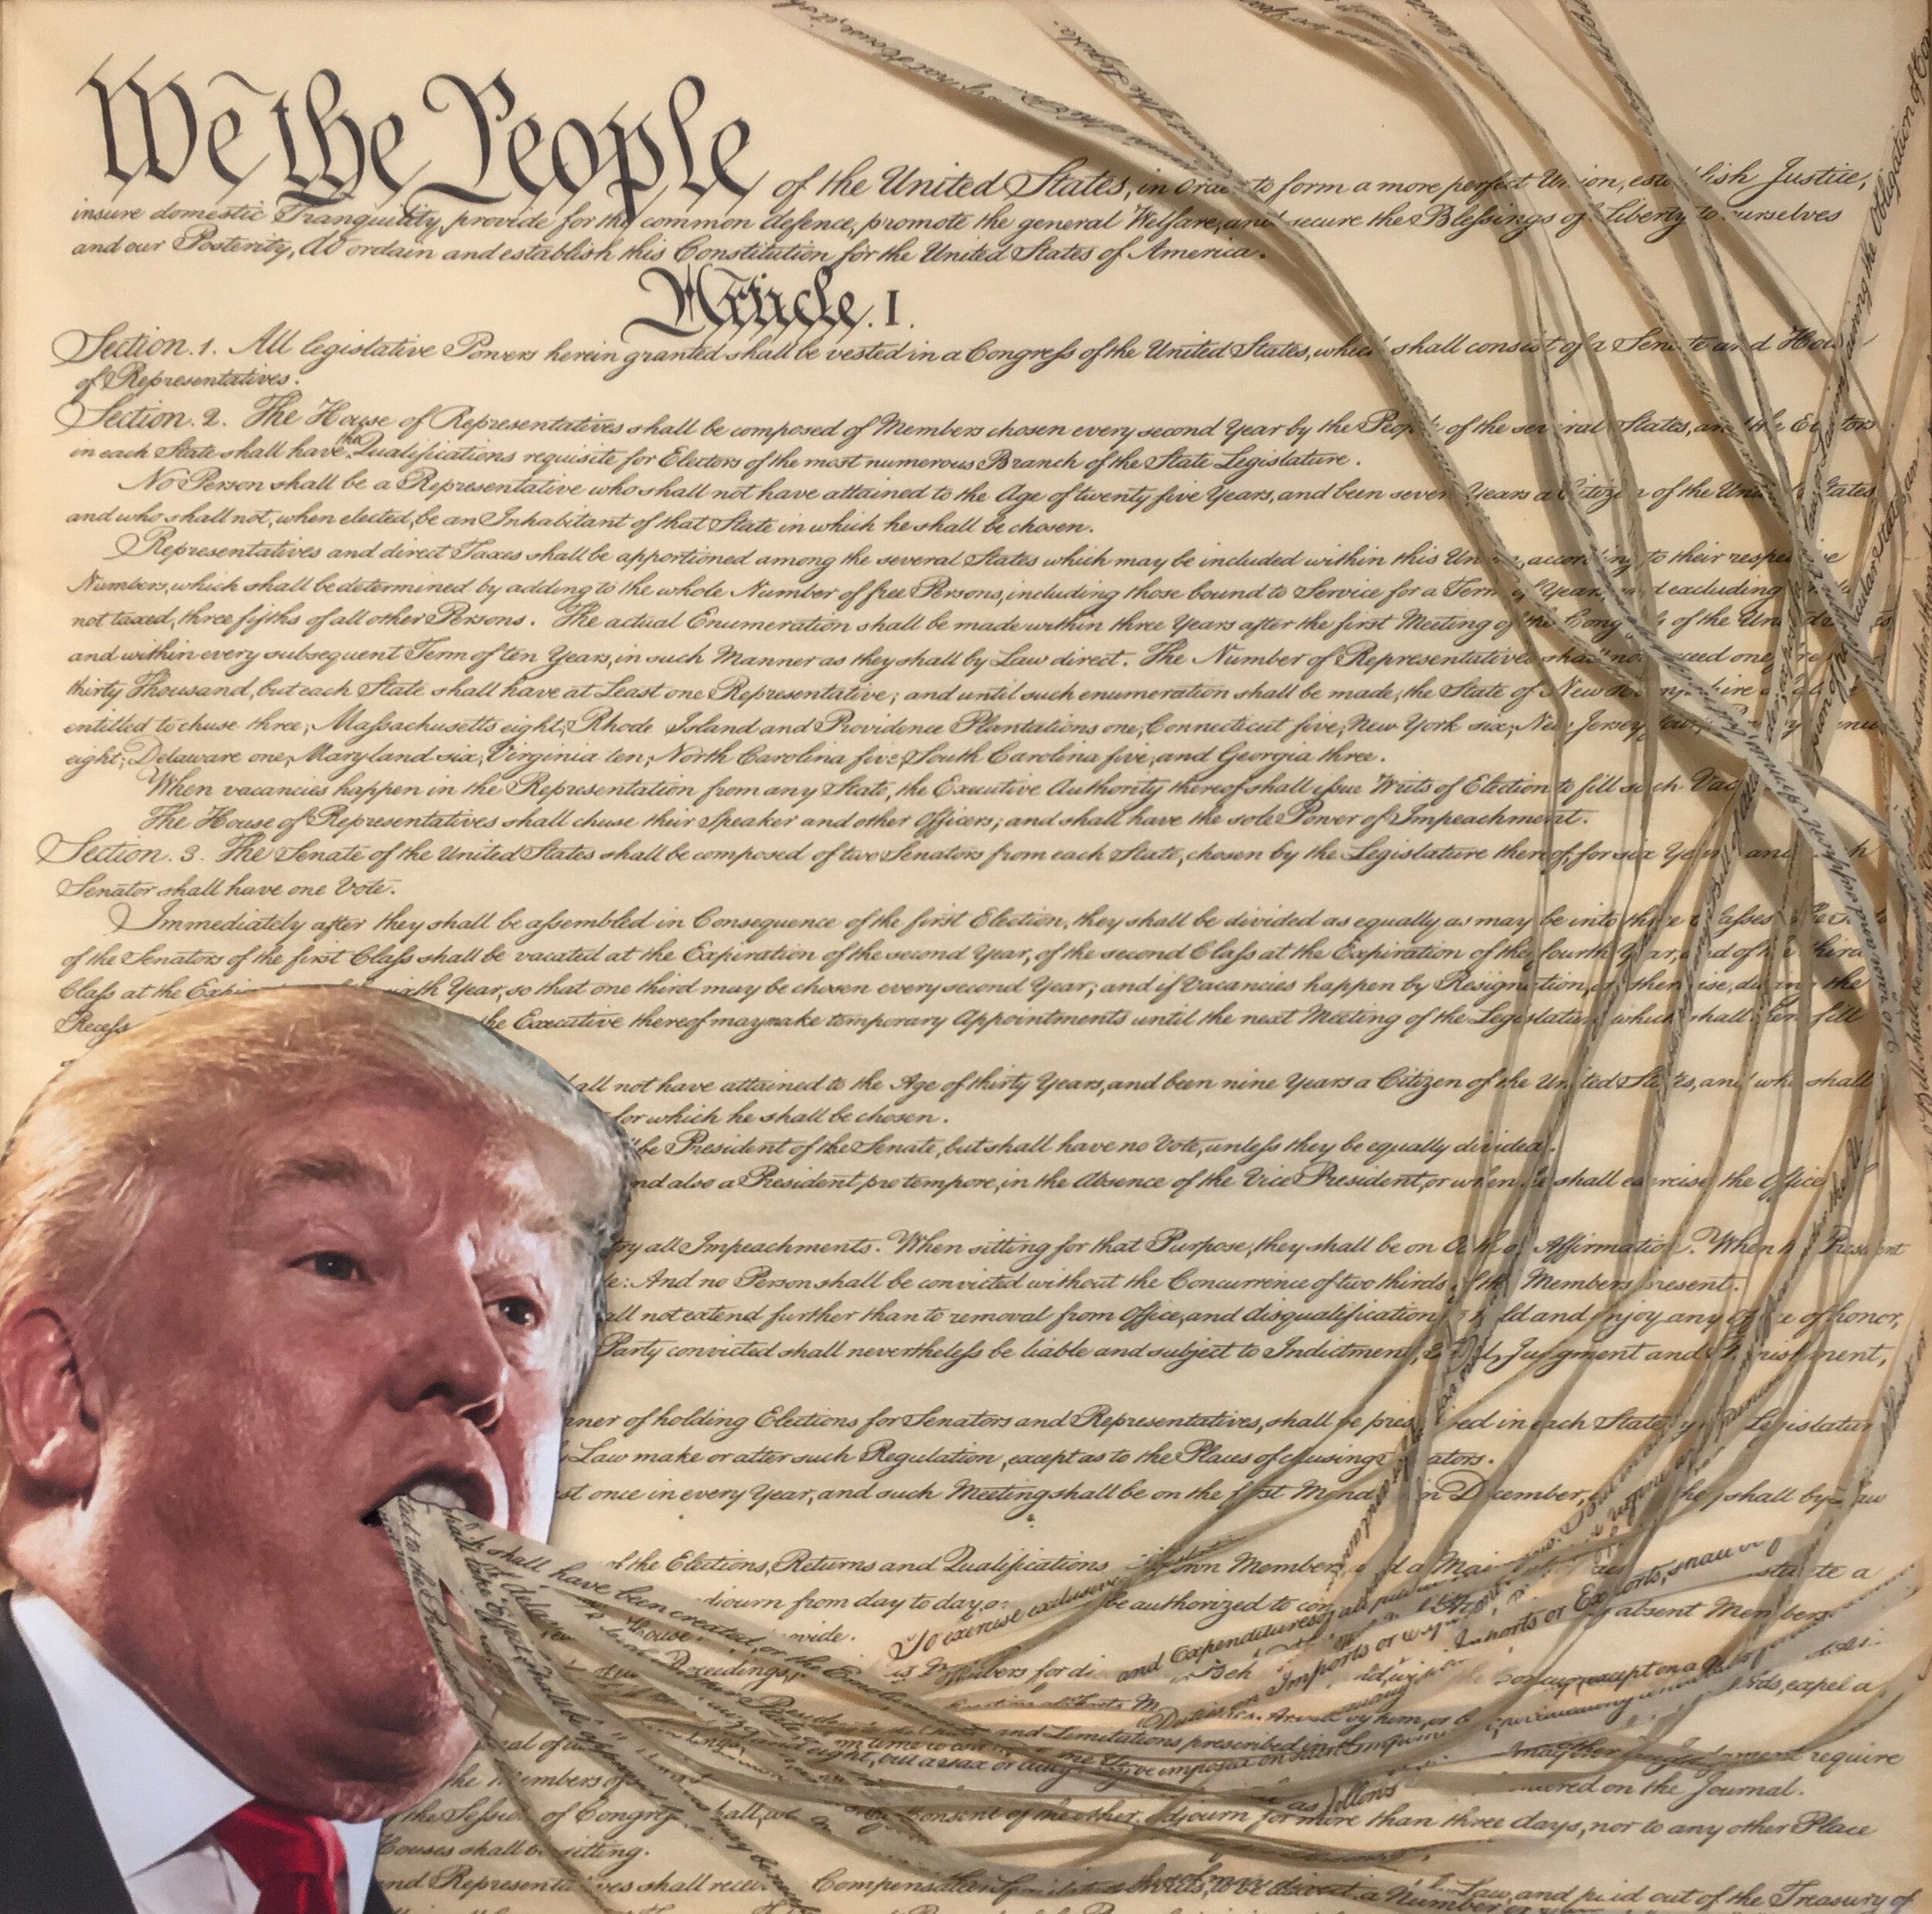 Trumpart: Constitutional Crisis